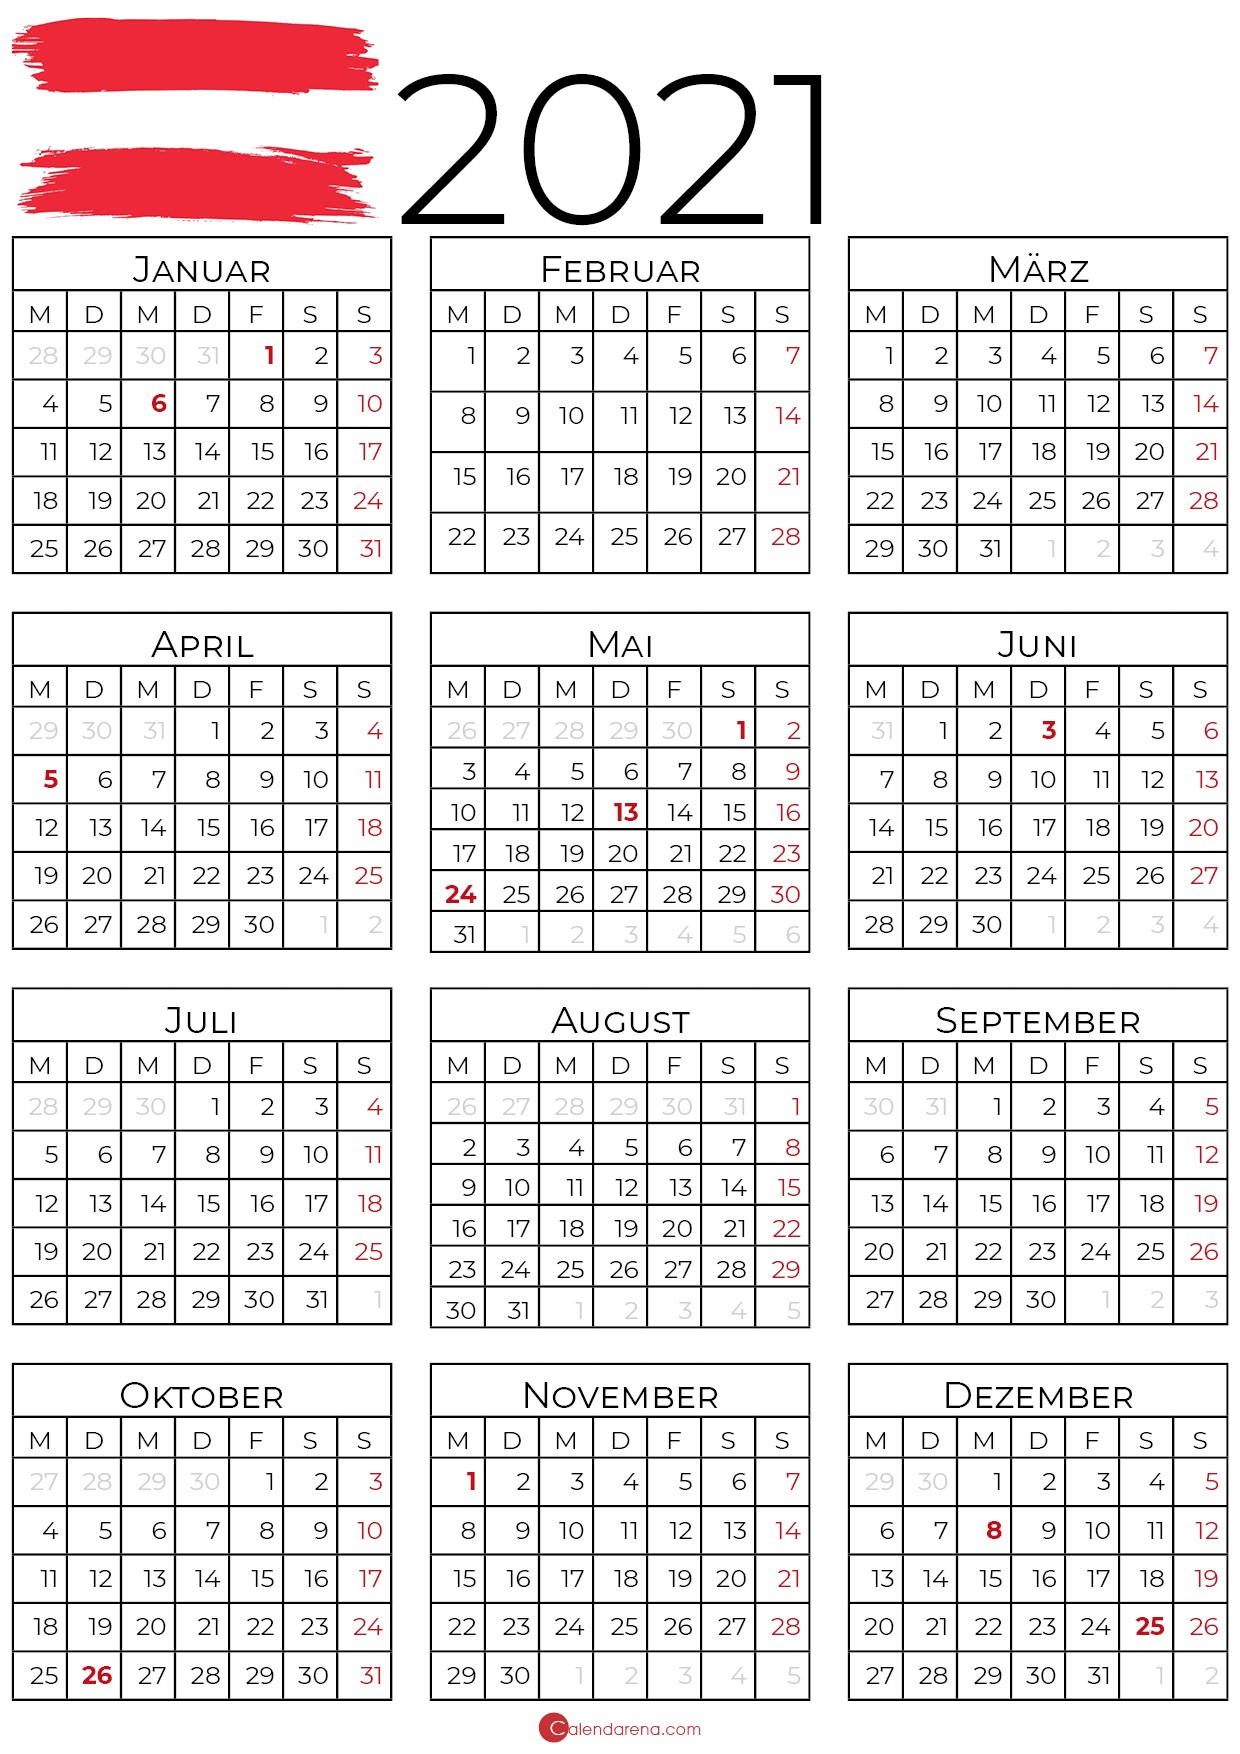 Kalender 2021 Österreich zum Ausdrucken als PDF - Calendarena